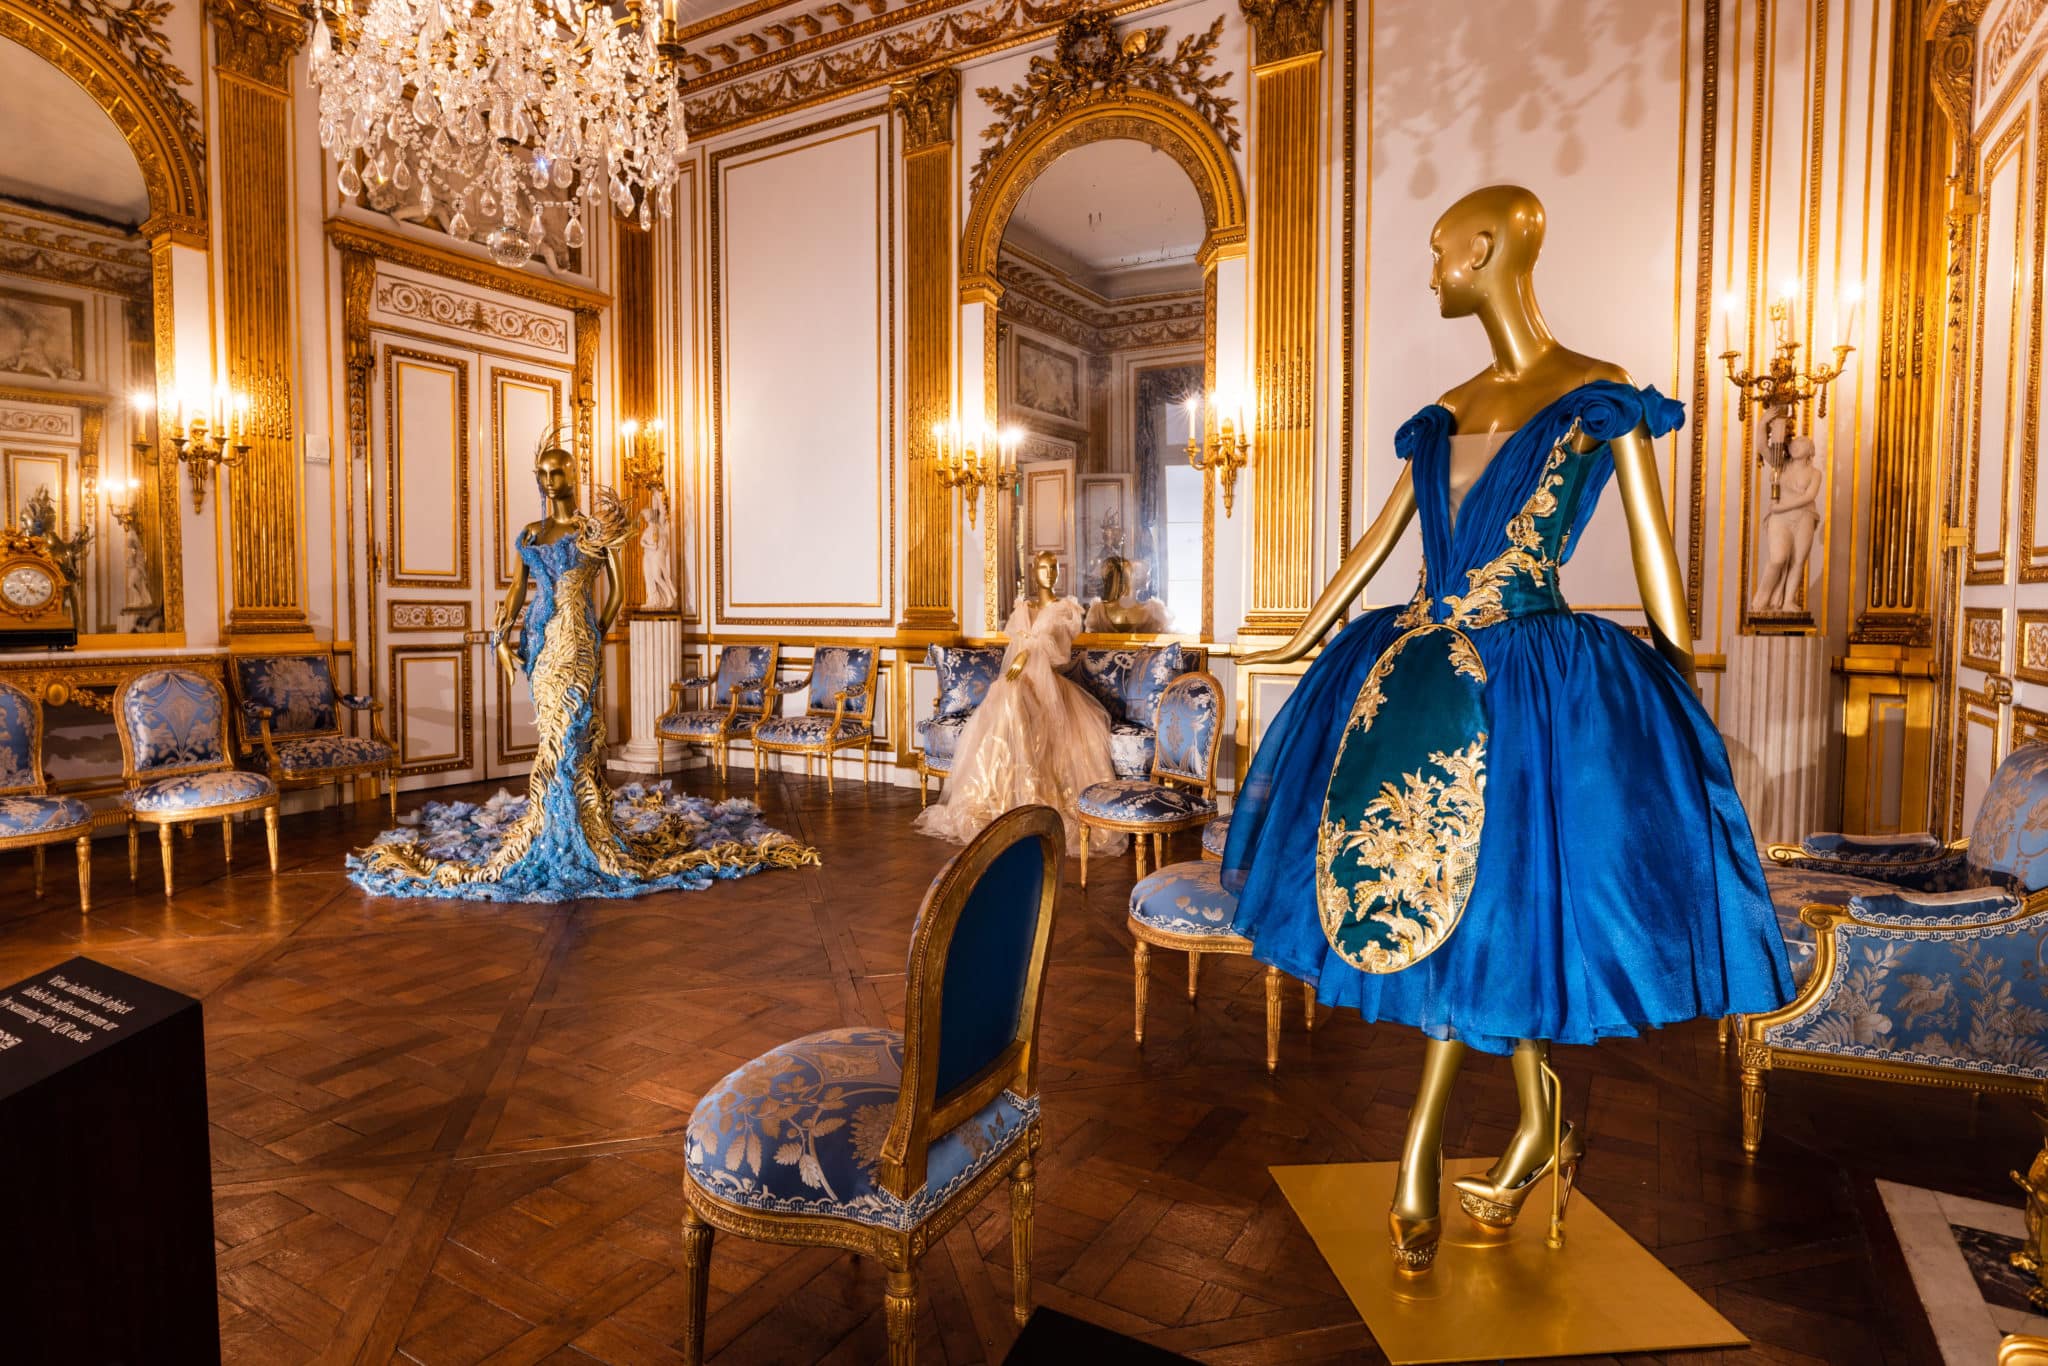 Baroque botanique art meets high end fashion at Louis Vuitton's latest show